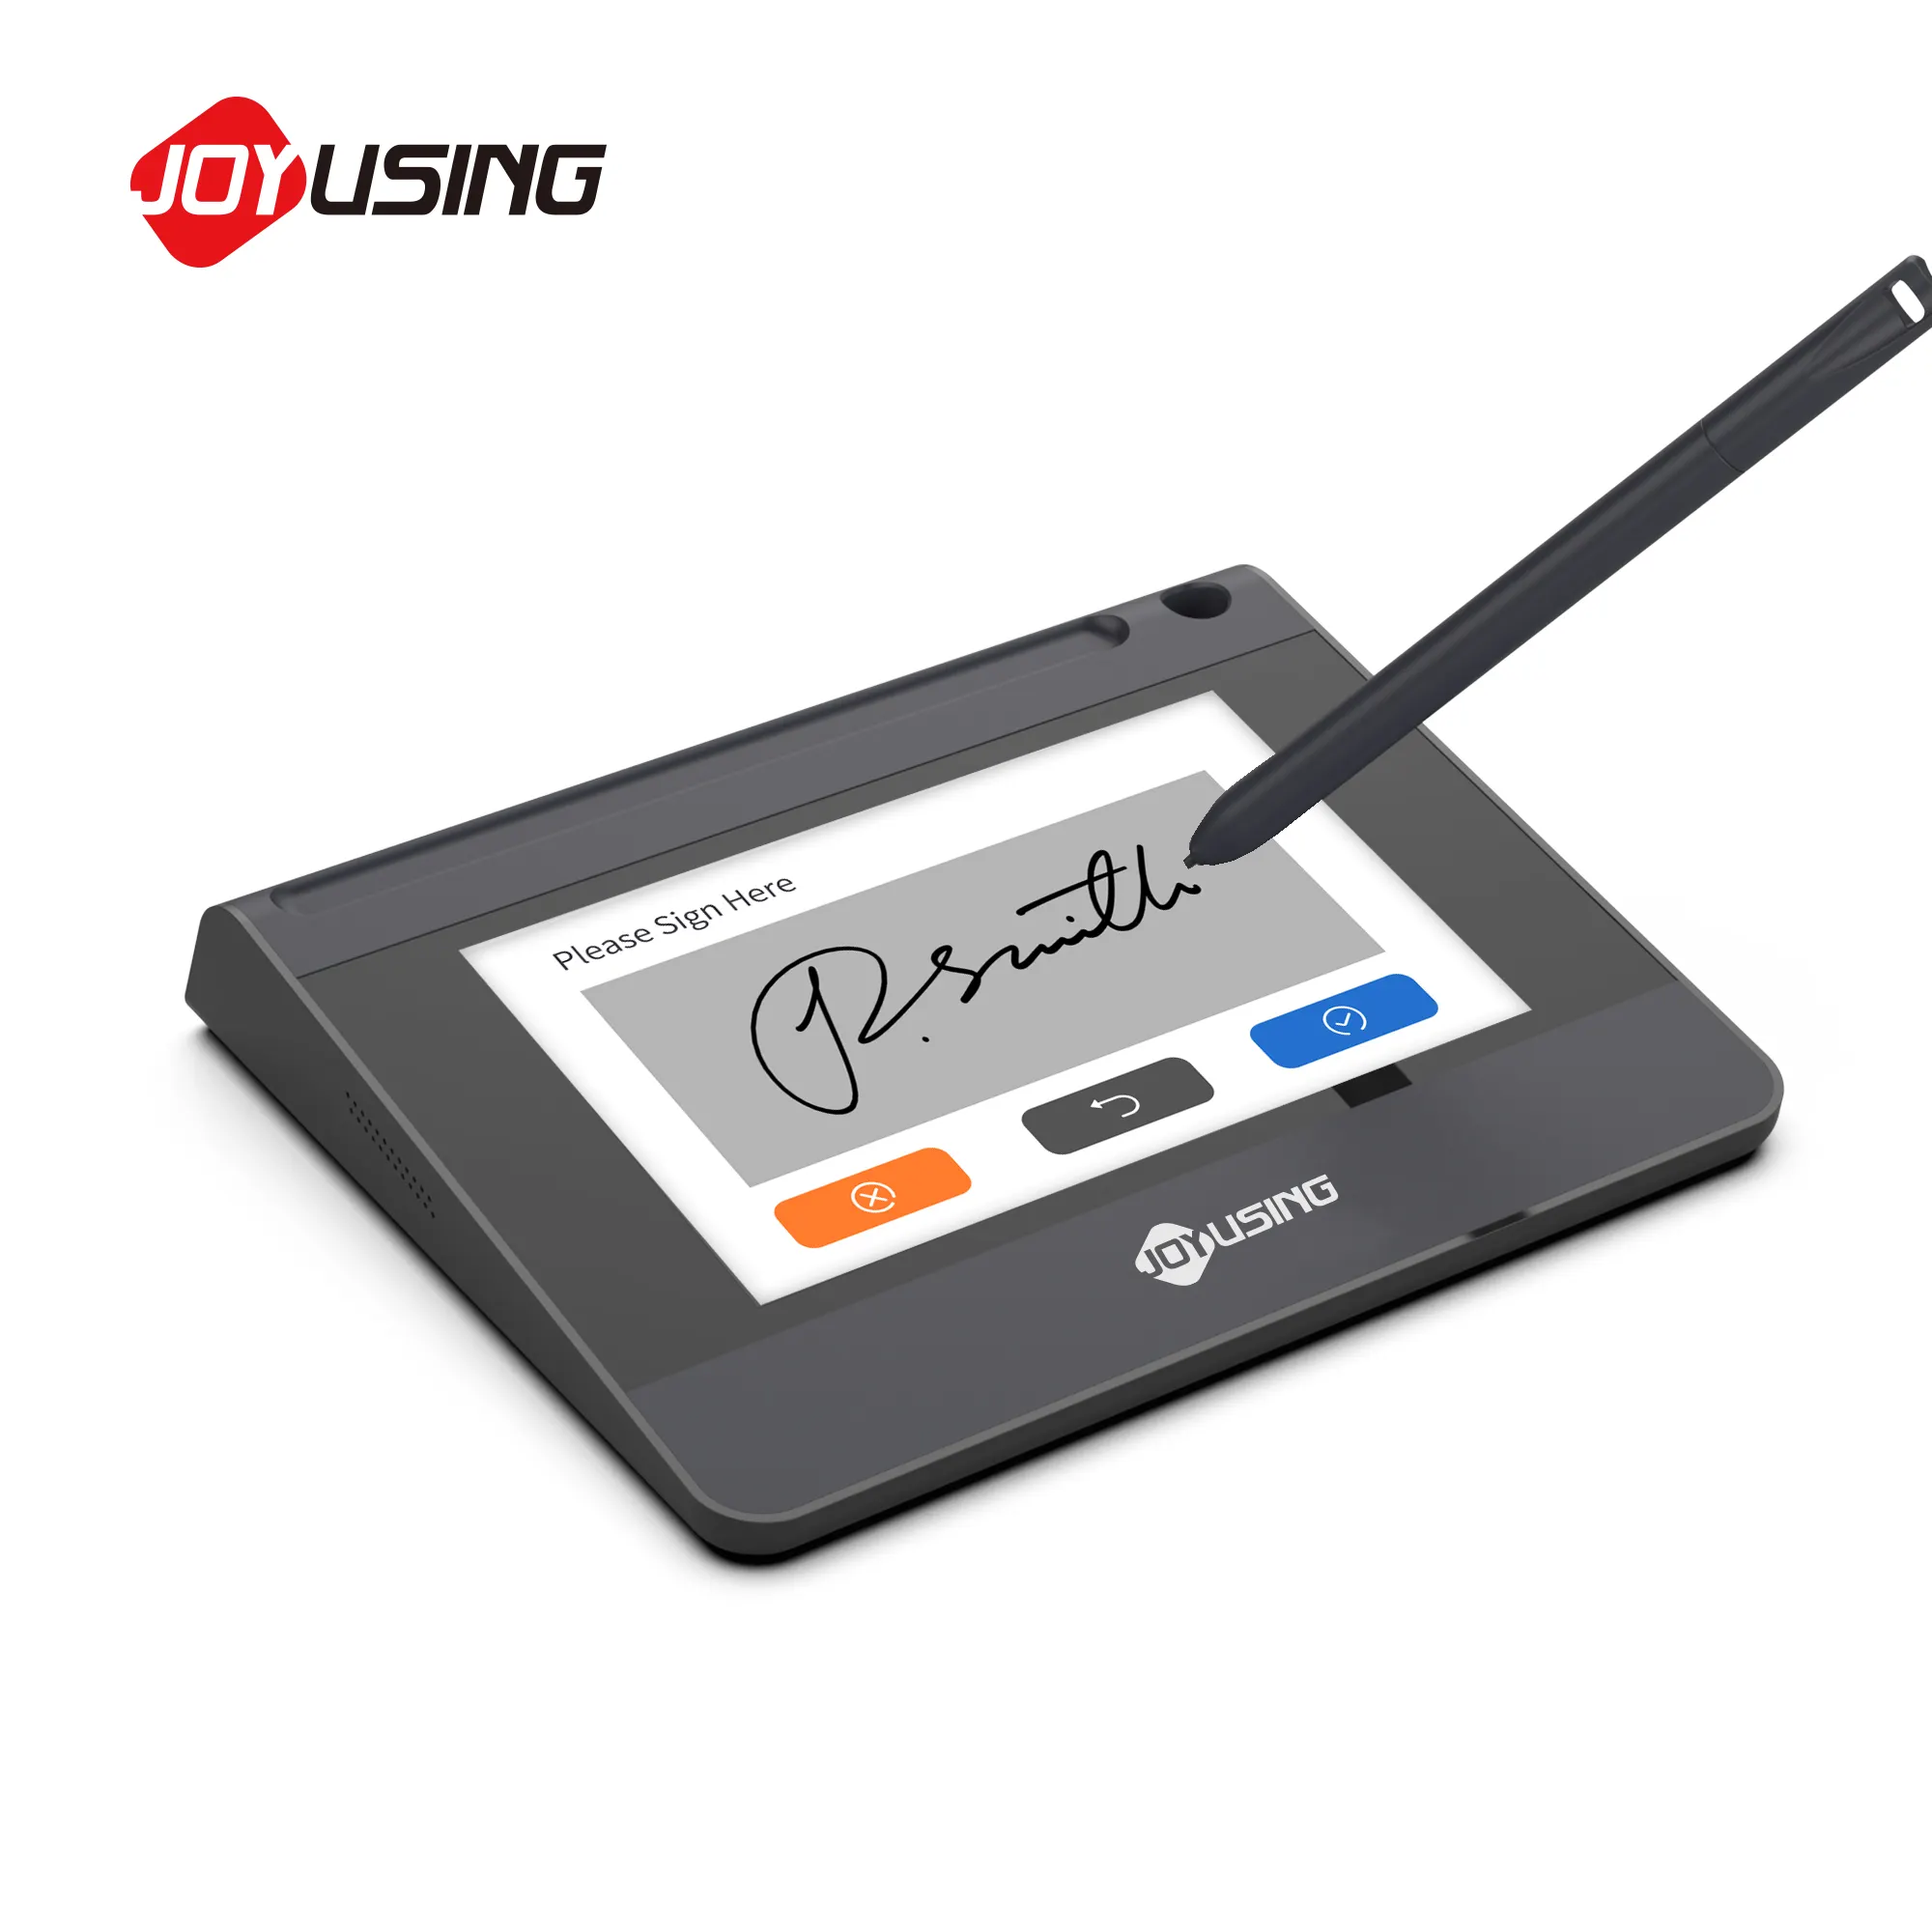 Joyusing SP550 chữ ký điện tử Pad bảo mật cao OEM giá rẻ bằng văn bản pad với màn hình lớn cho đa mục đích xác minh